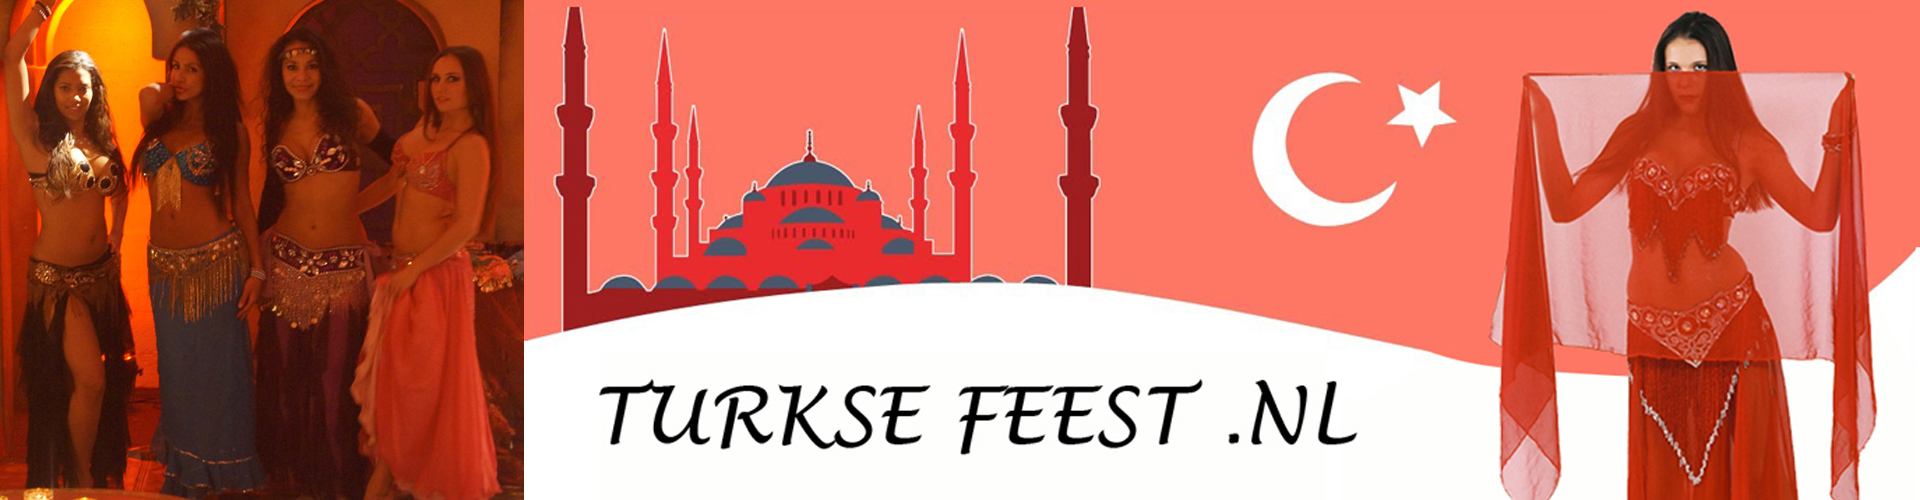 Thema feest turkije